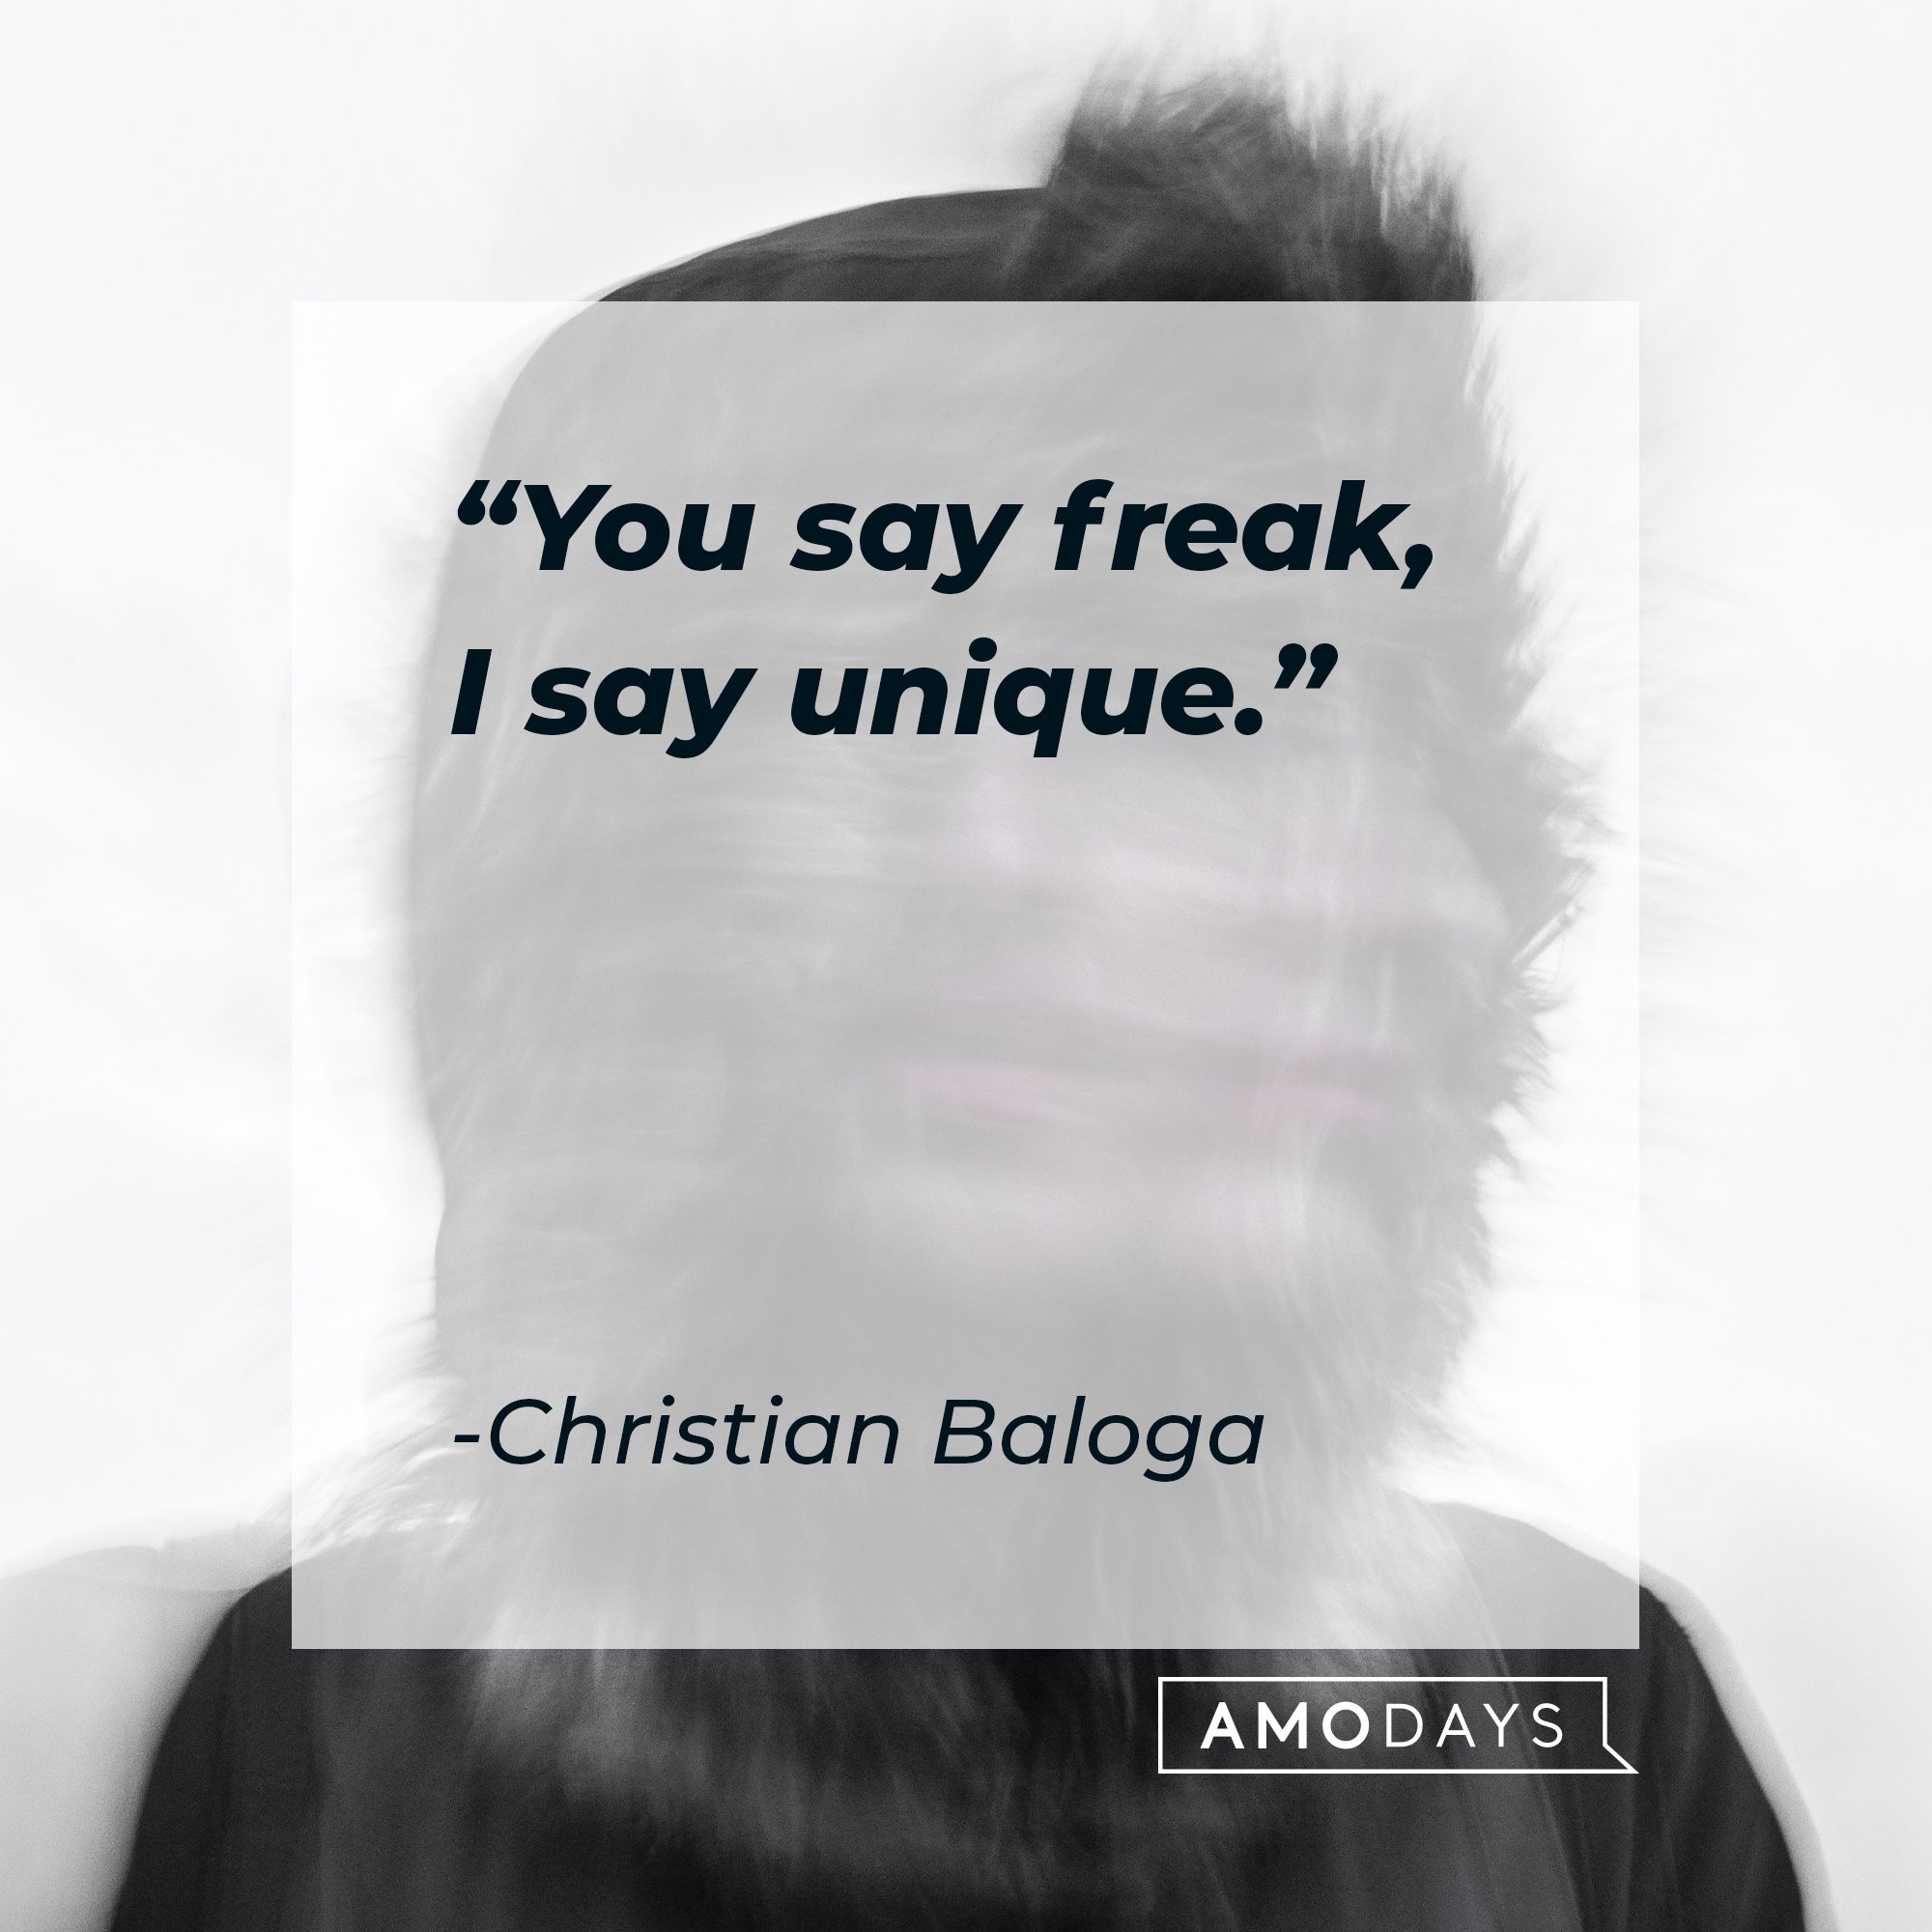 Christian Baloga's quote: "You say freak, I say unique." | Image: AmoDays